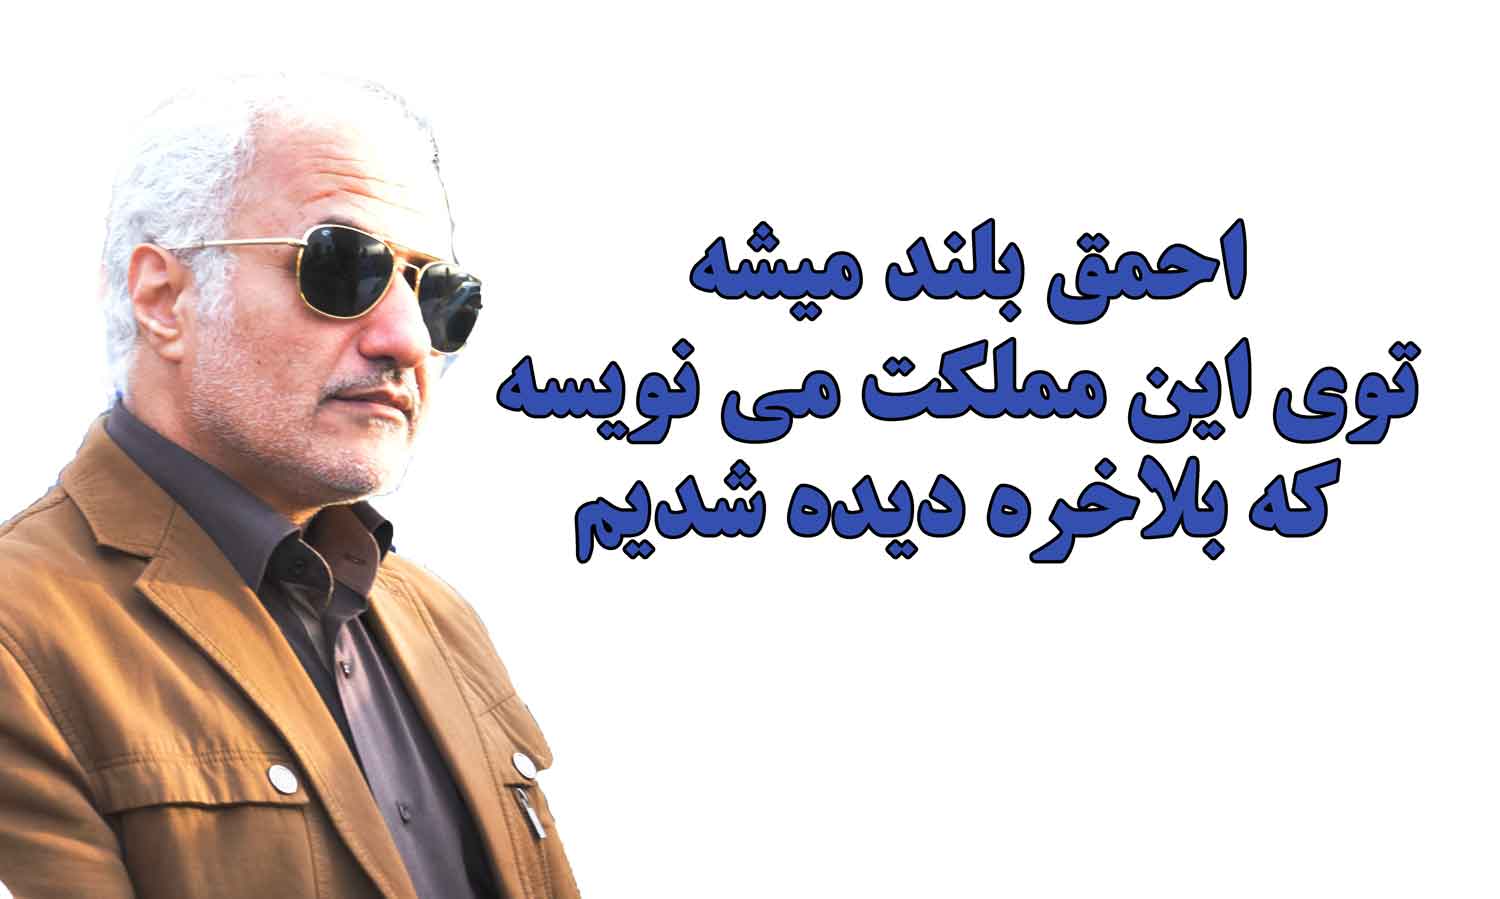 یکی از بهترین و طوفانی ترین سخنرانی های حسن عباسی 